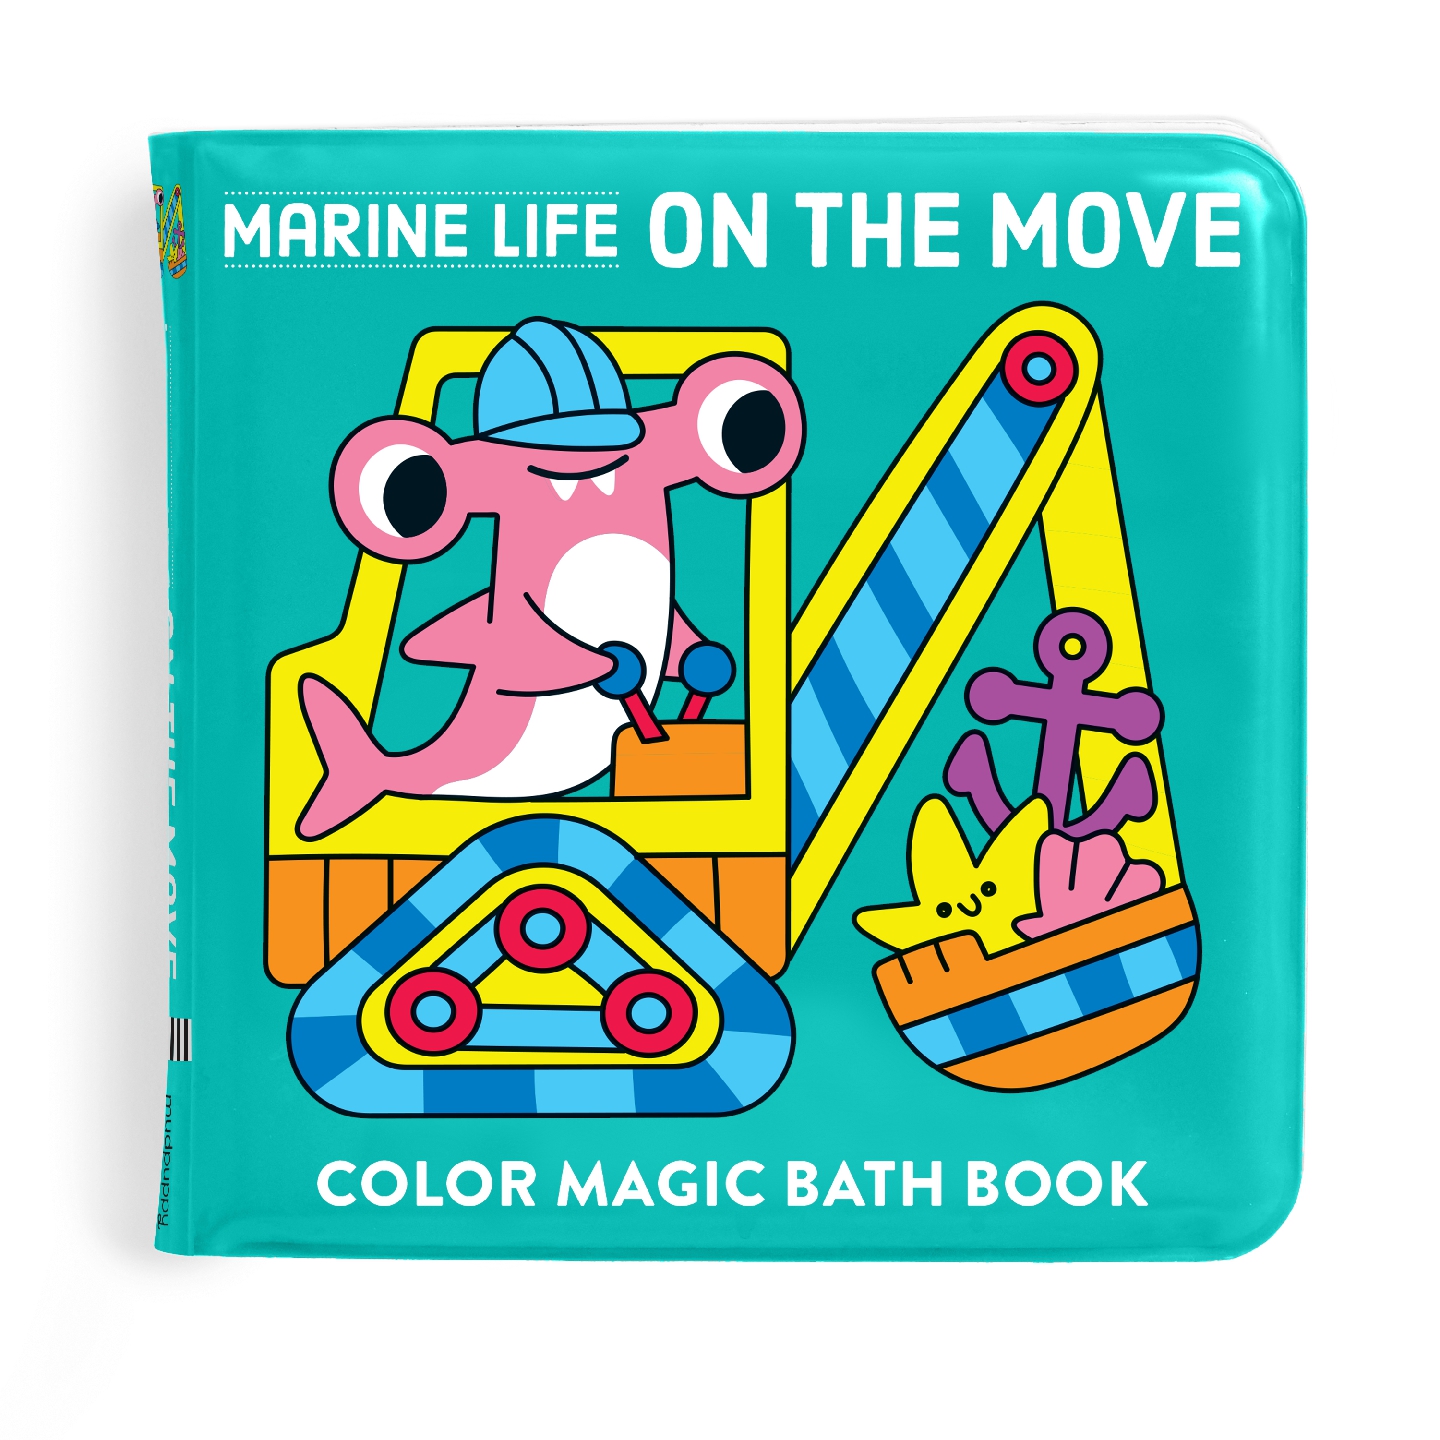 Marine Life On the Move Color Magic Bath Book